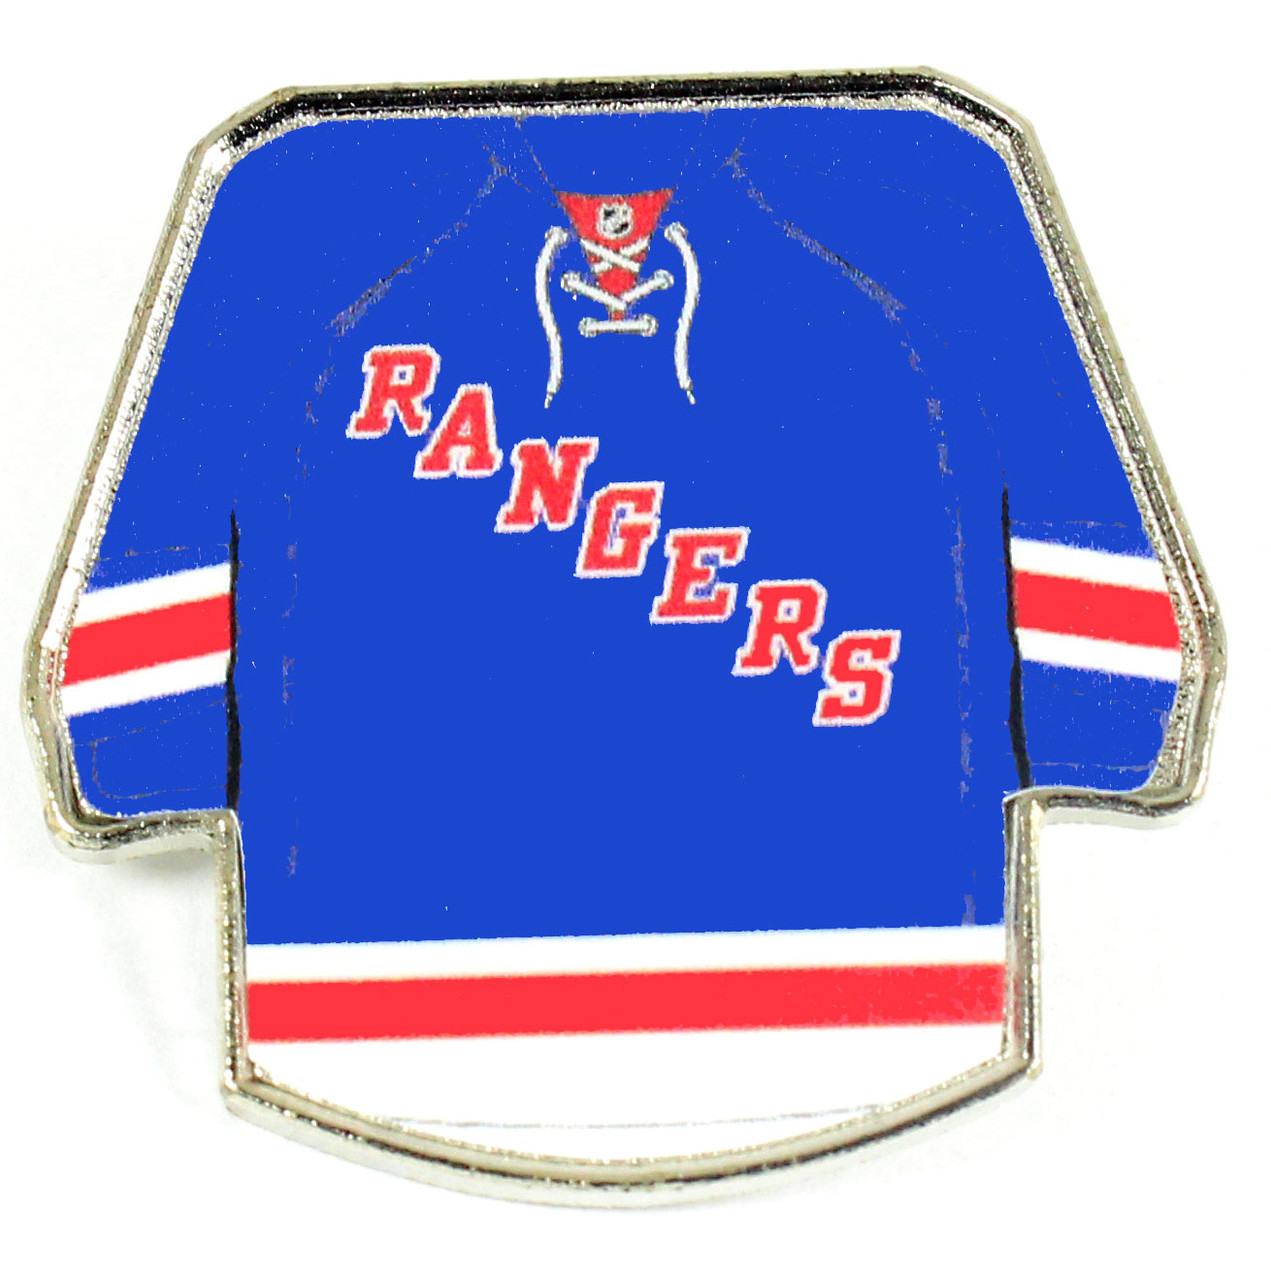 Pin on Rangers gear!